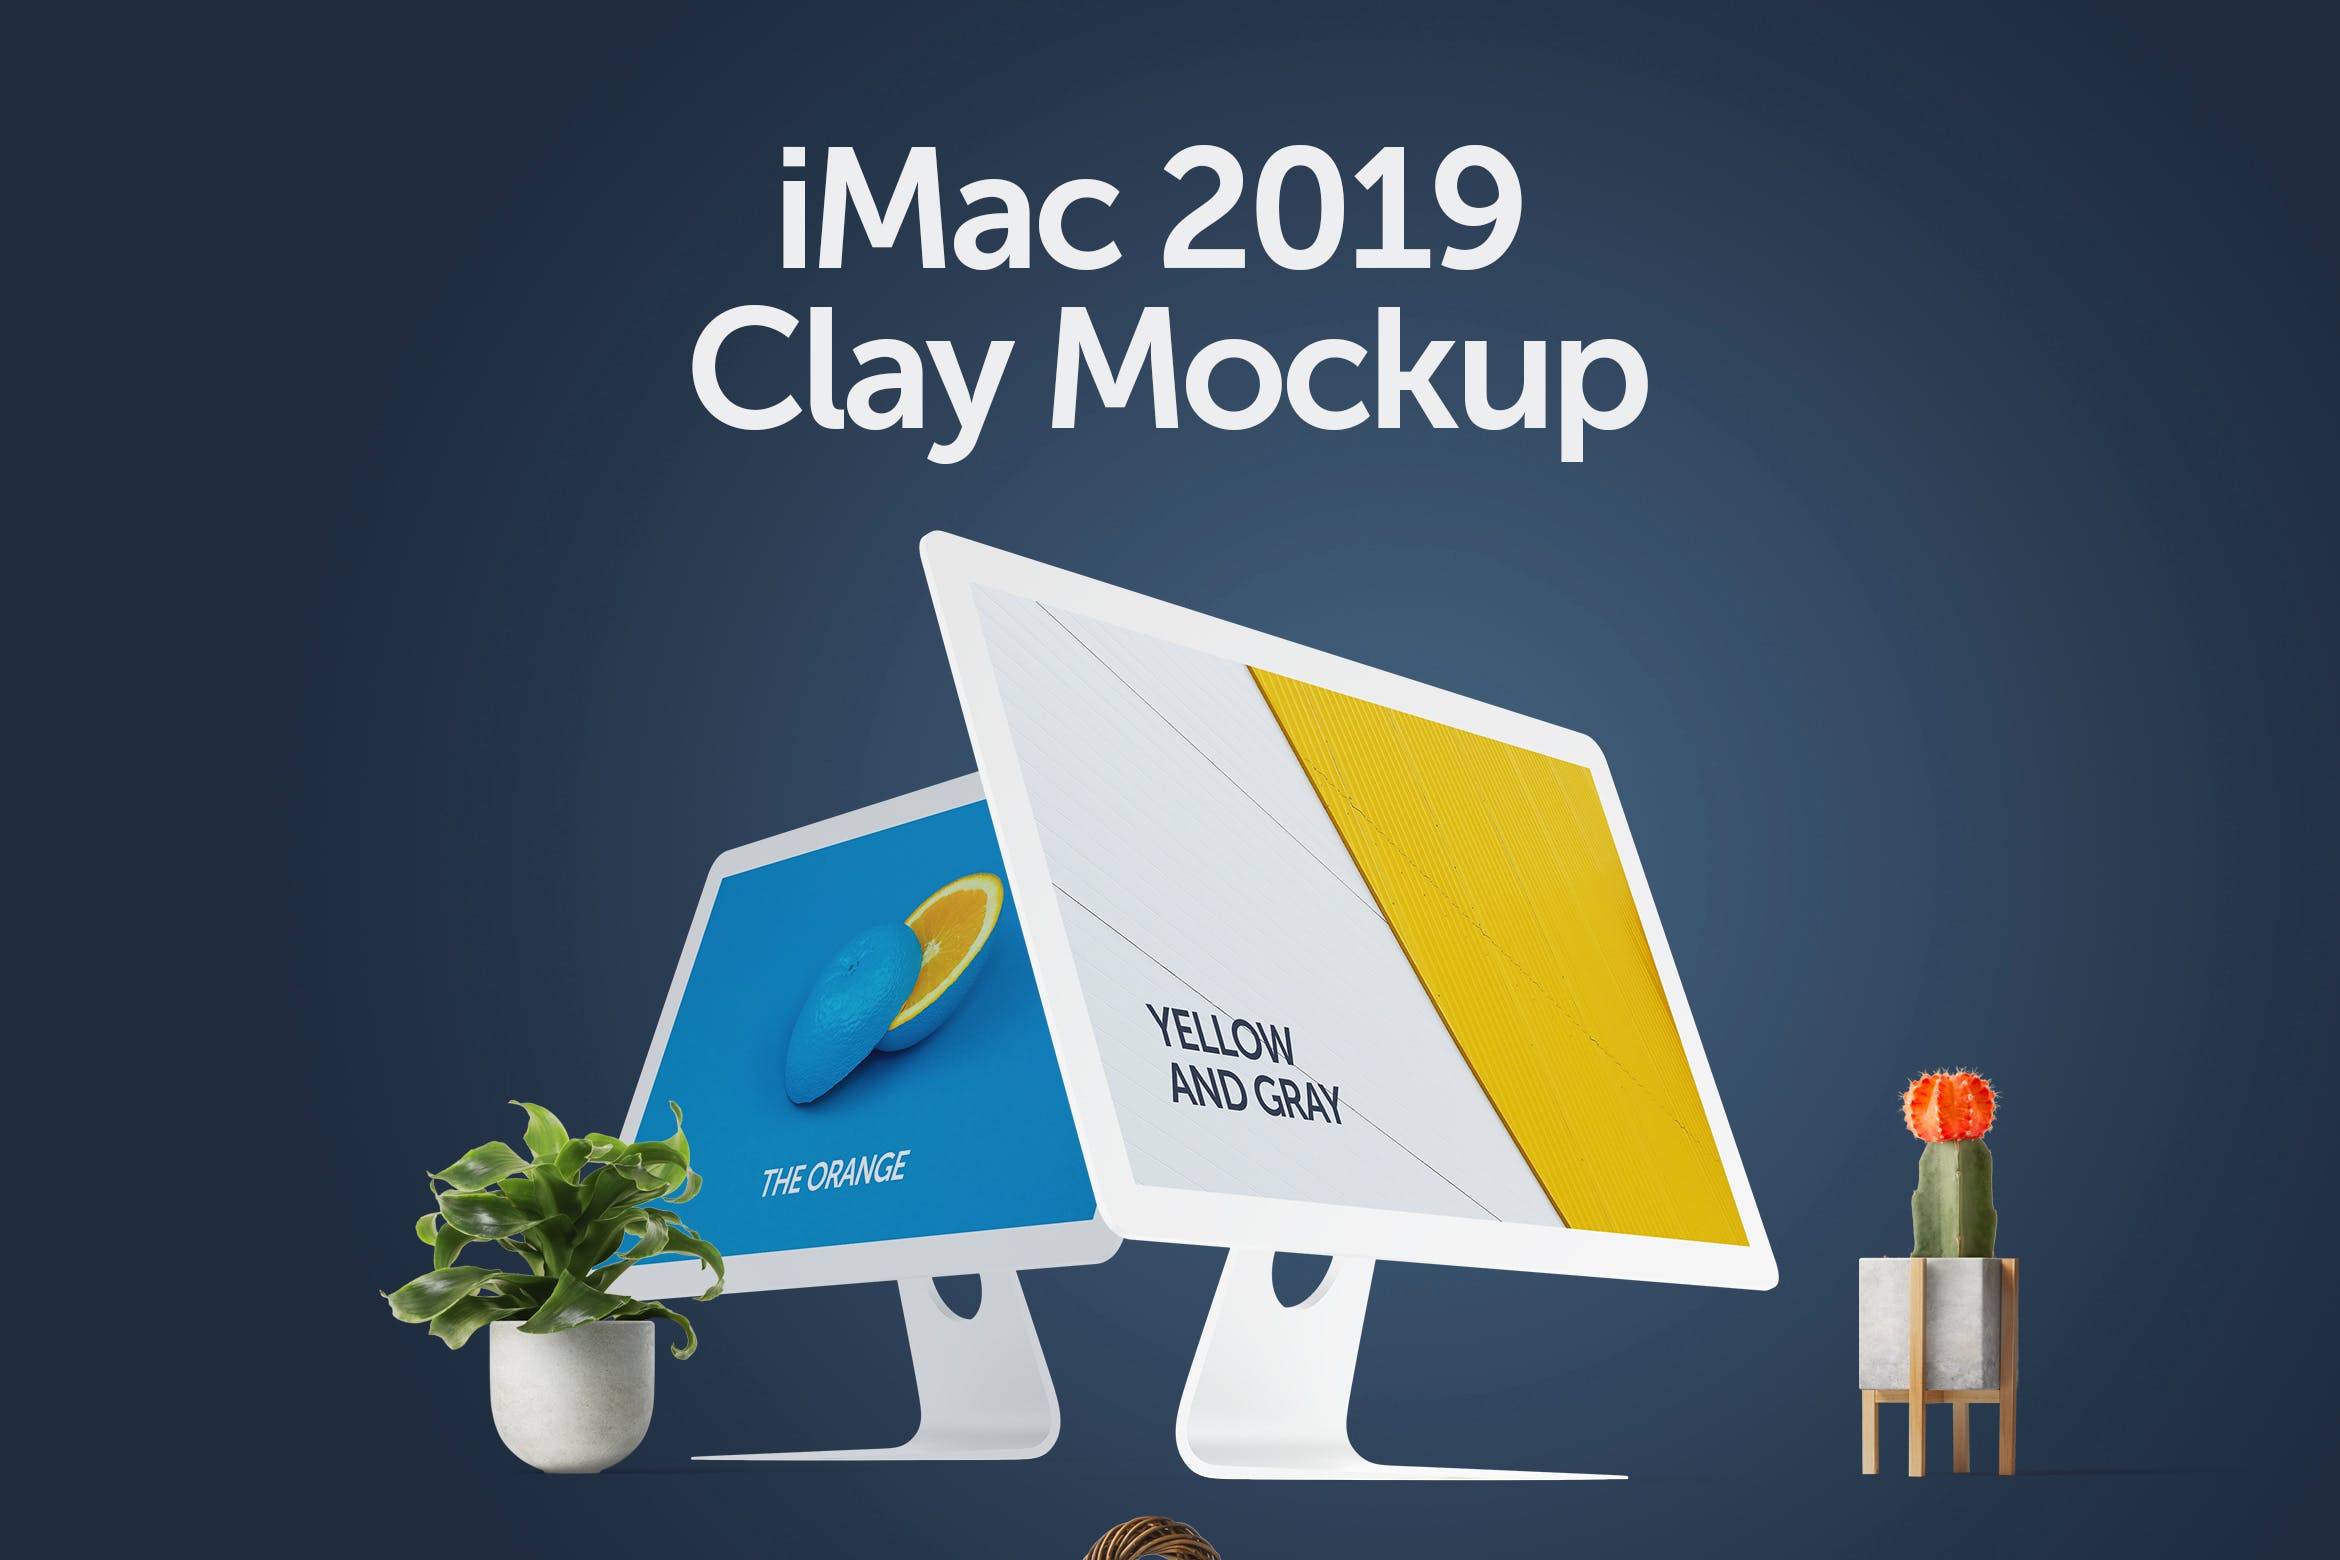 iMac一体机电脑屏幕演示效果图第一素材精选样机 iMac 2019 Clay Mockup插图